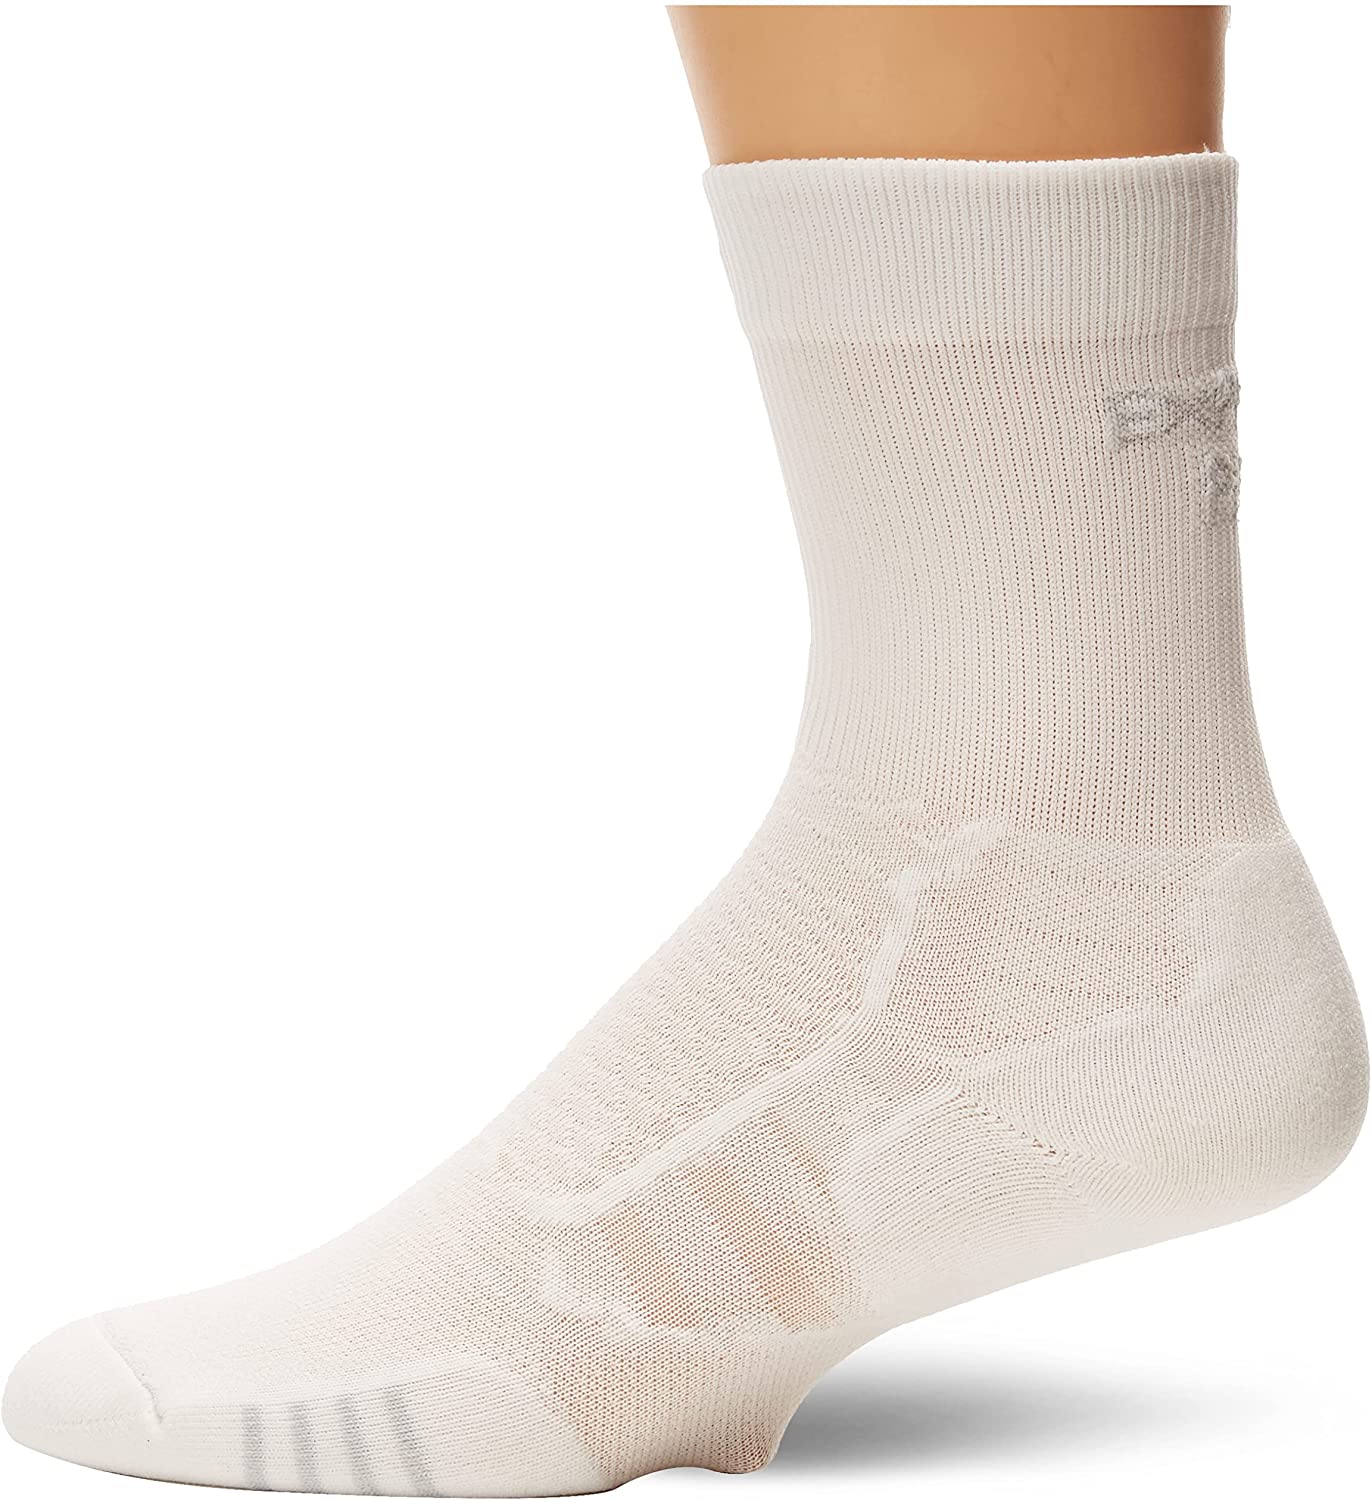 2 Thorlo ProLite No Show Ankle Socks White Medium ~ New 